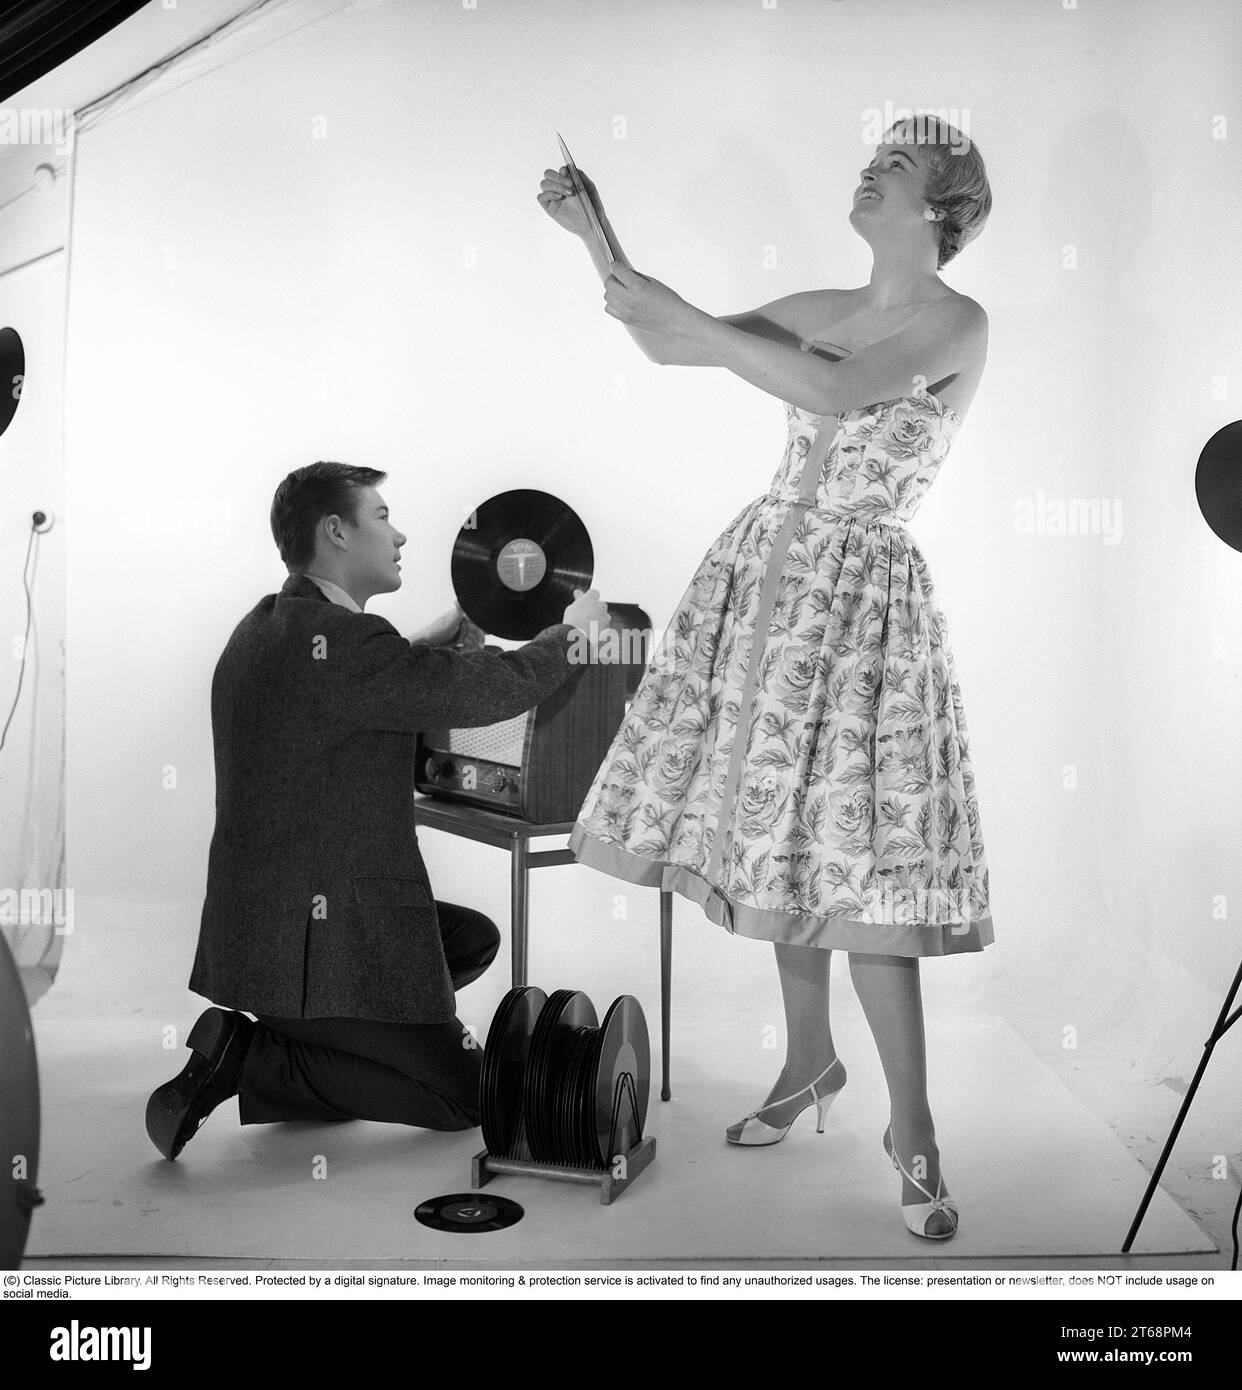 Gramófono en la década de 1950 Un hombre está arrodillado por un conjunto de recitación combinado y un gabinete de gramófono donde ha abierto la cubierta del gramófono y tiene un registro en su mano. Ella está vestida con un vestido típico de los años 1950 que se ve feliz. Suecia 1959. Kristoffersson ref CD65-2 Foto de stock